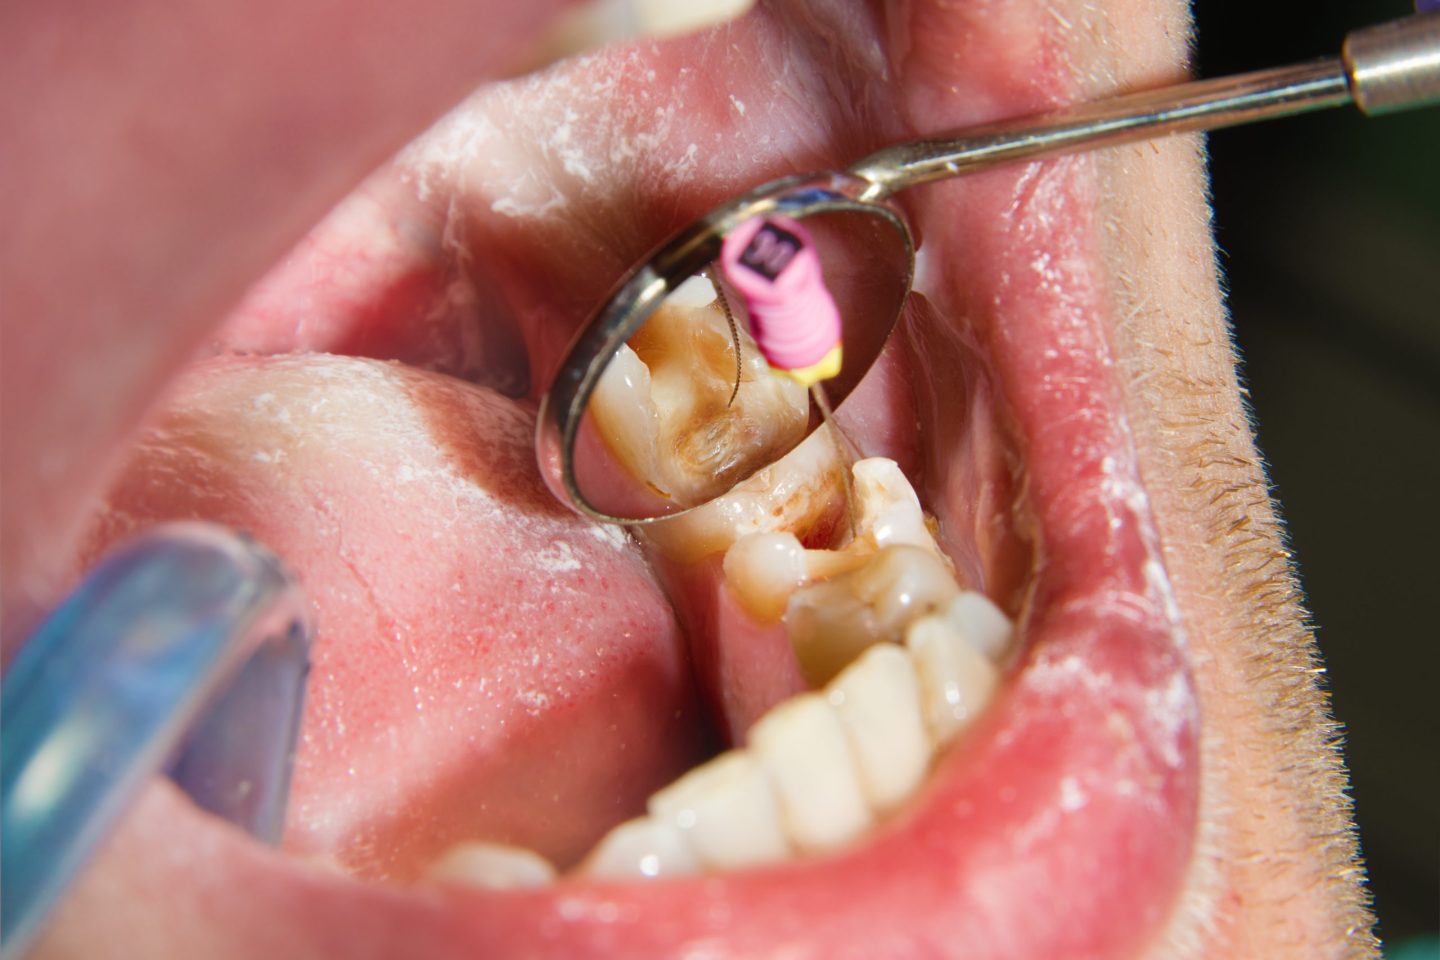 تقنية جديدة قد تنقذك من المعاناة عند طبيب الأسنان